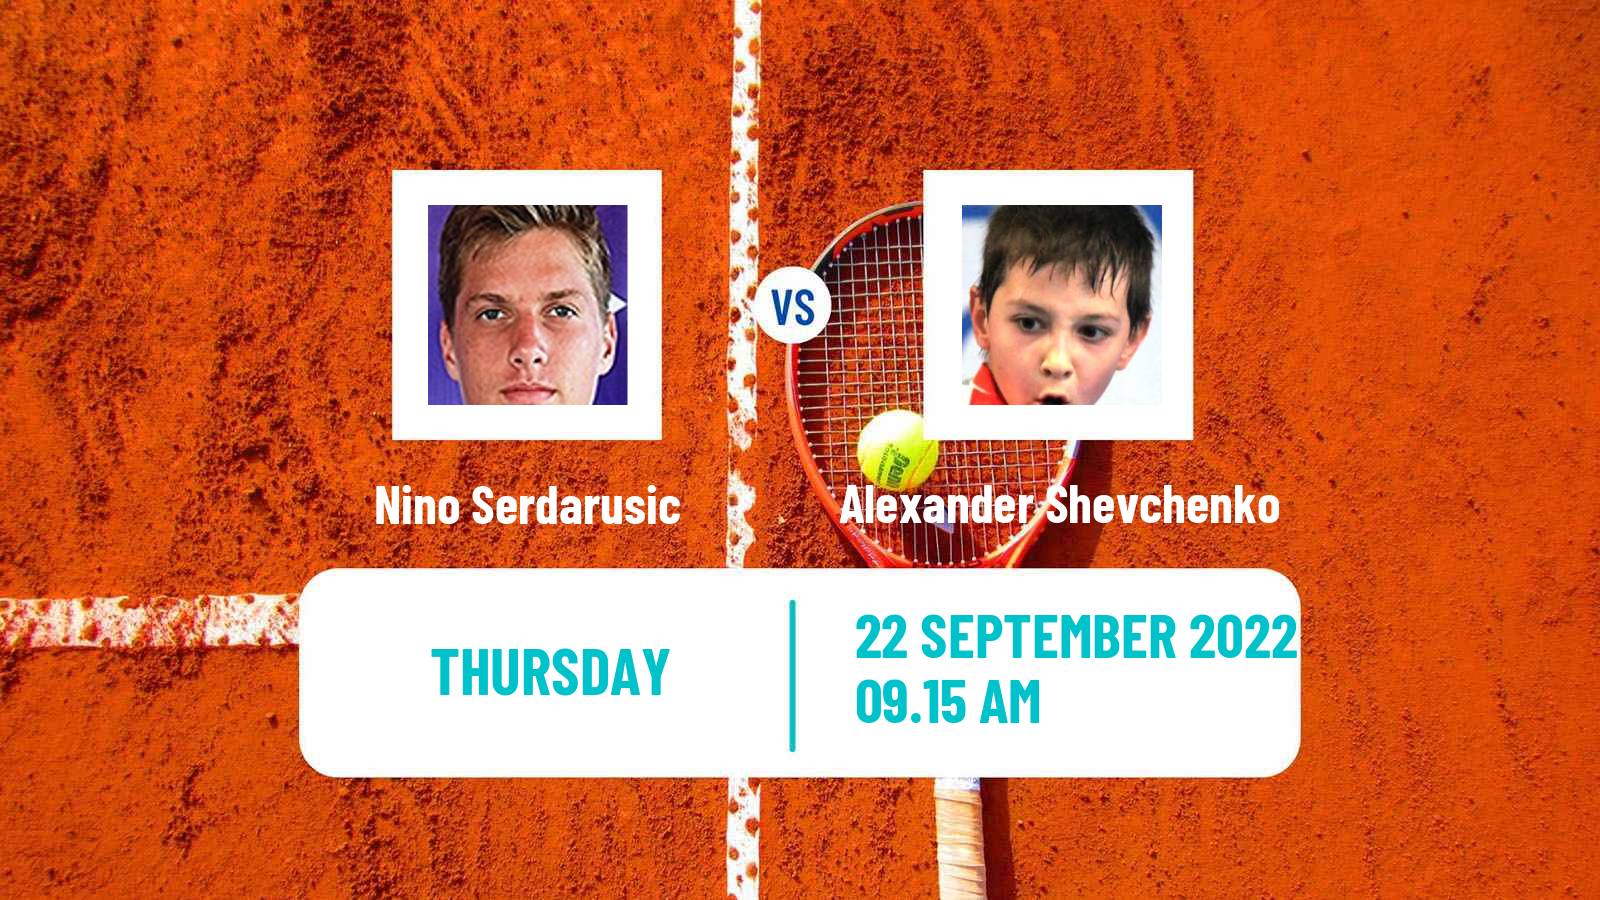 Tennis ATP Challenger Nino Serdarusic - Alexander Shevchenko